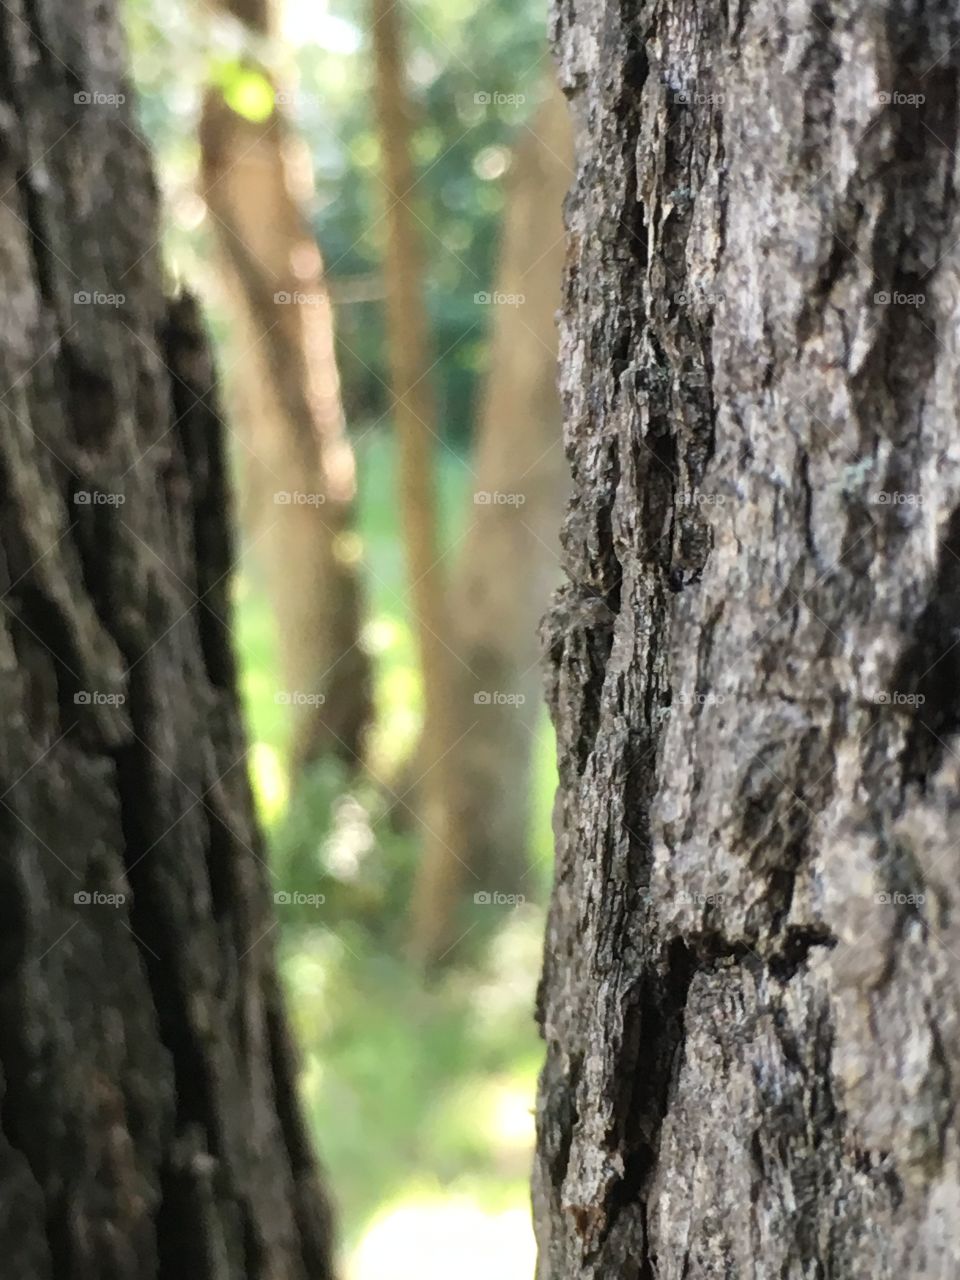 Between the tree